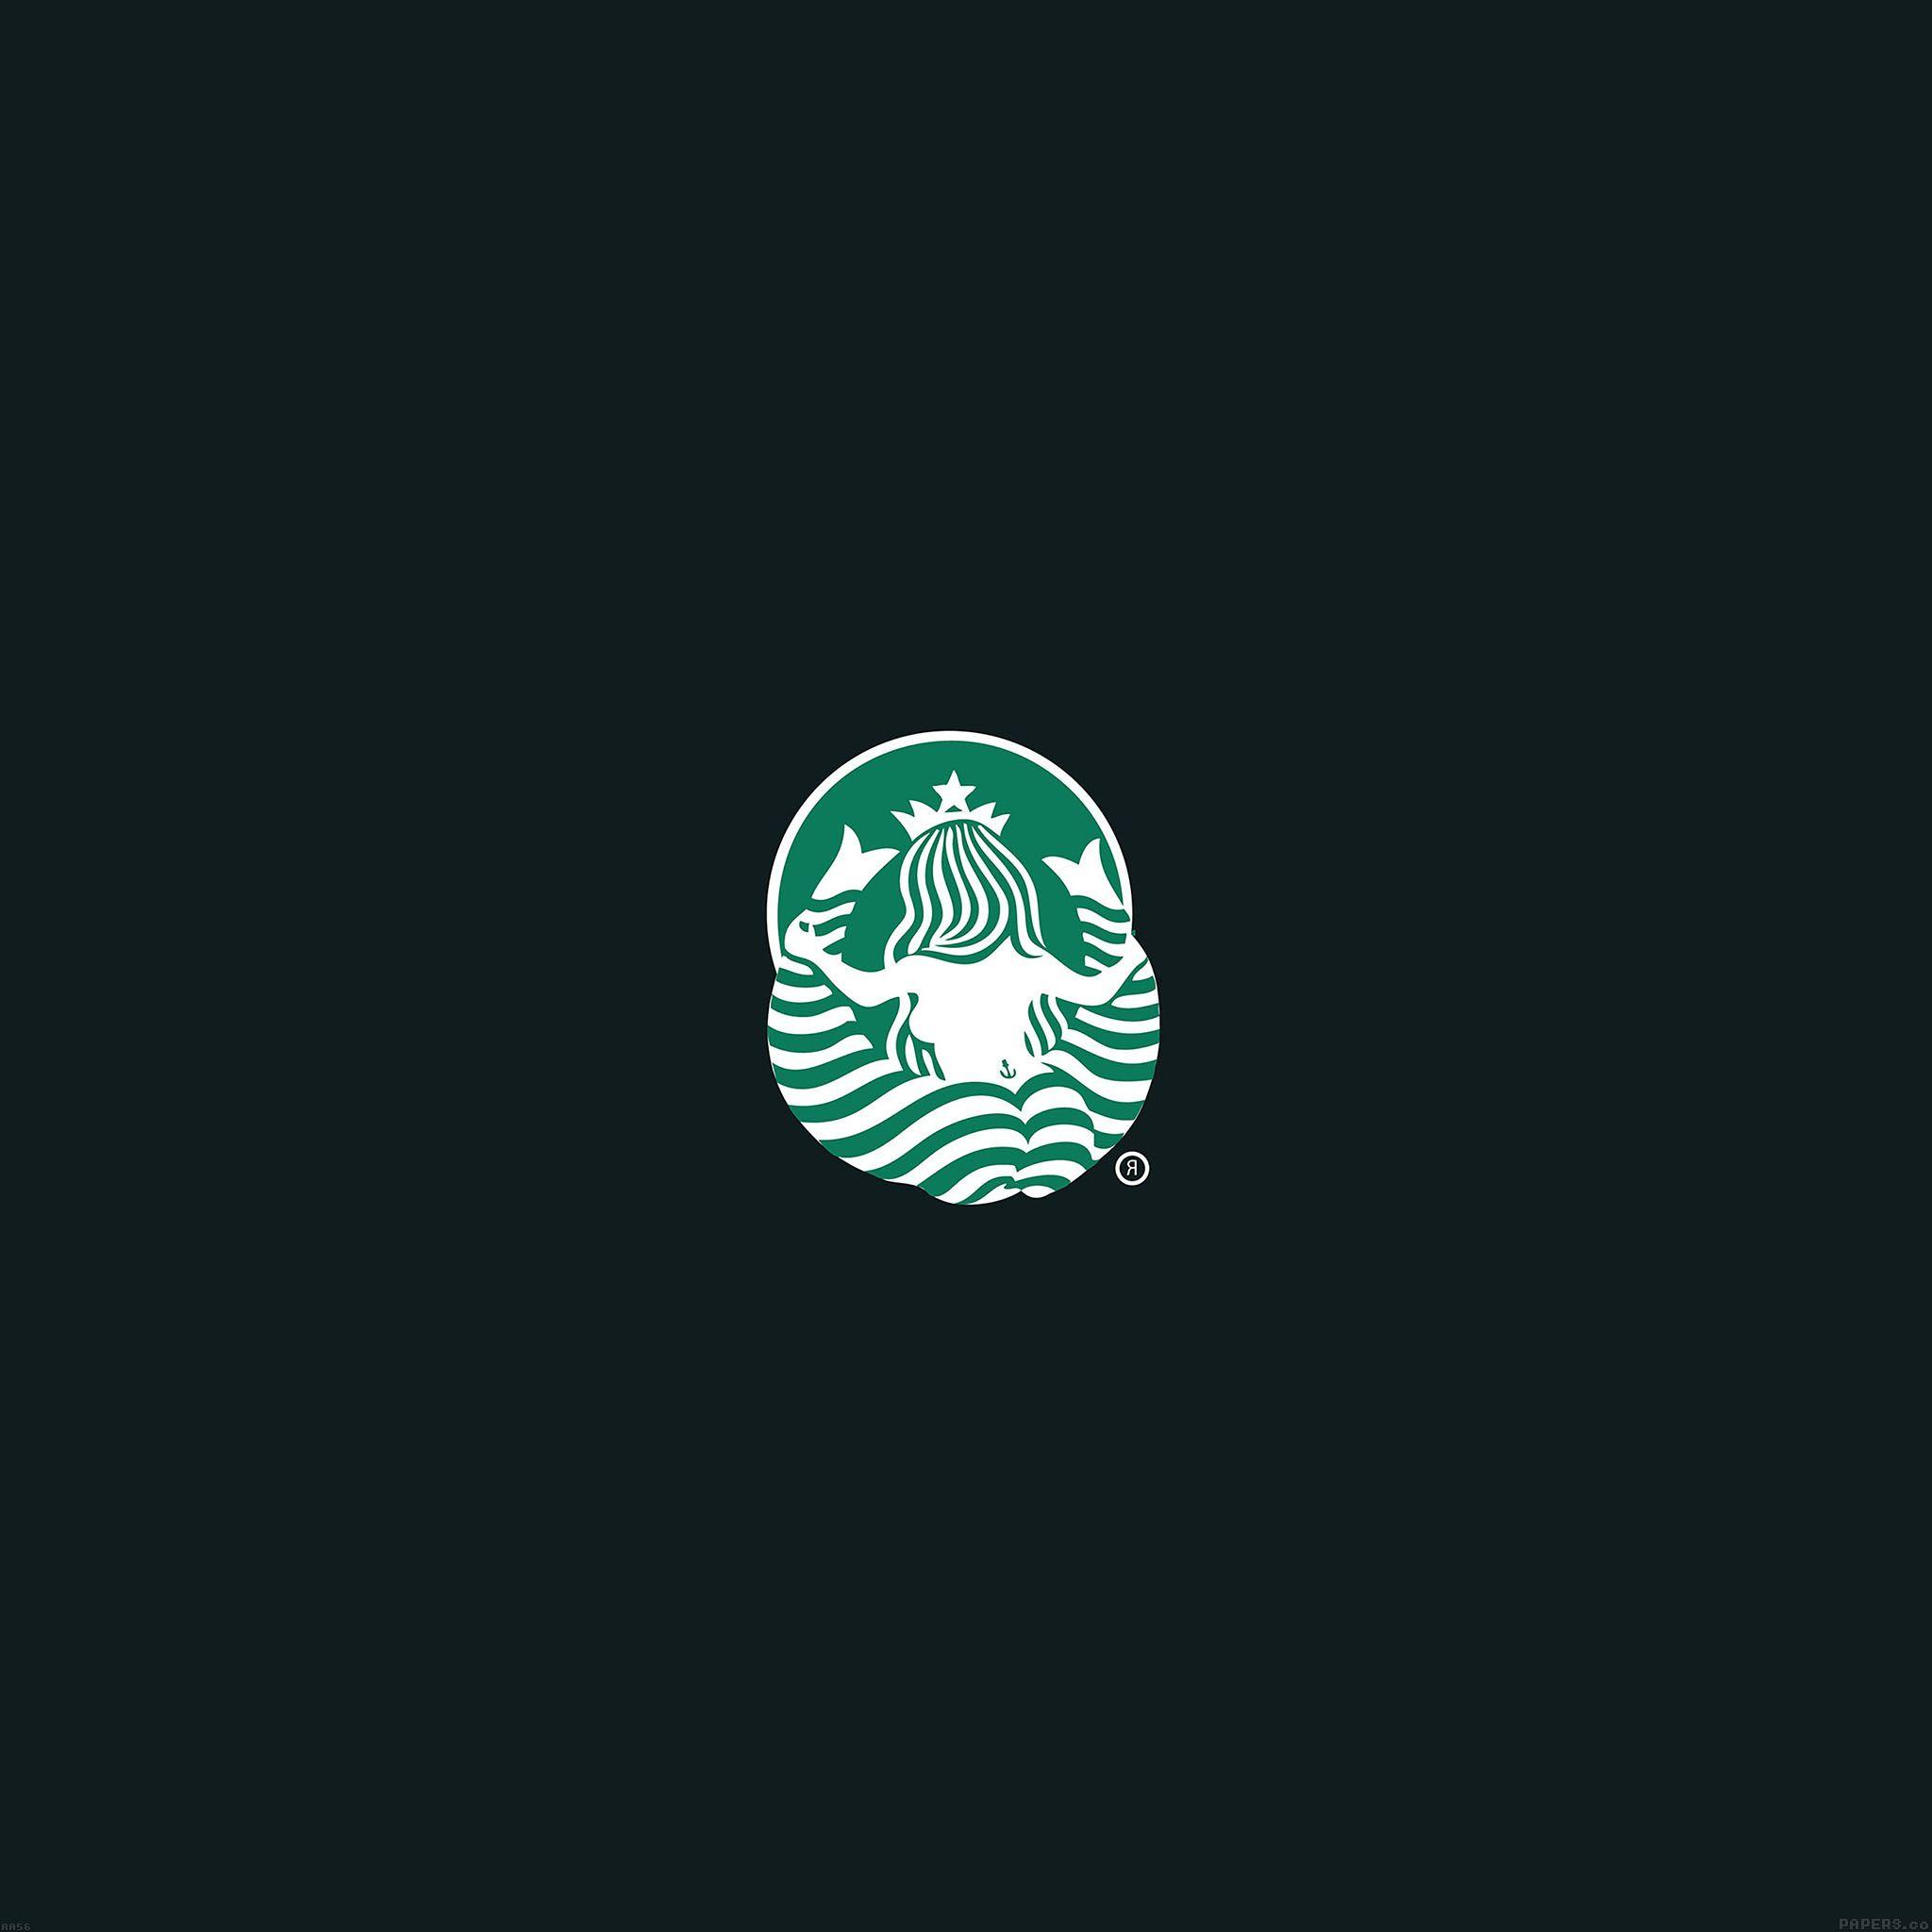 Medium Starbucks Logo - AndroidPapers.co of starbucks logo art